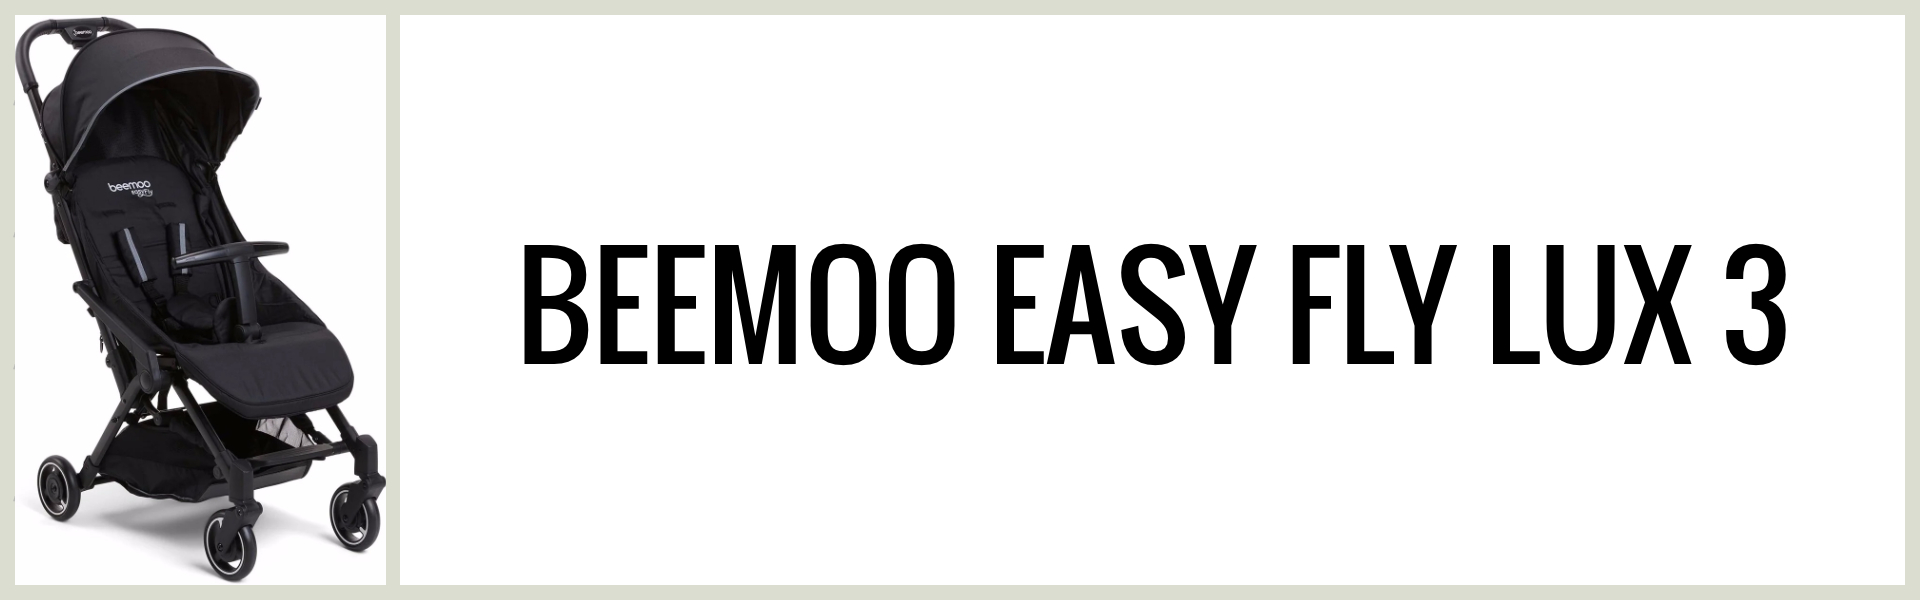 Omdöme: Hur är Beemoo Easy Fly Lux 3 som resevagn?